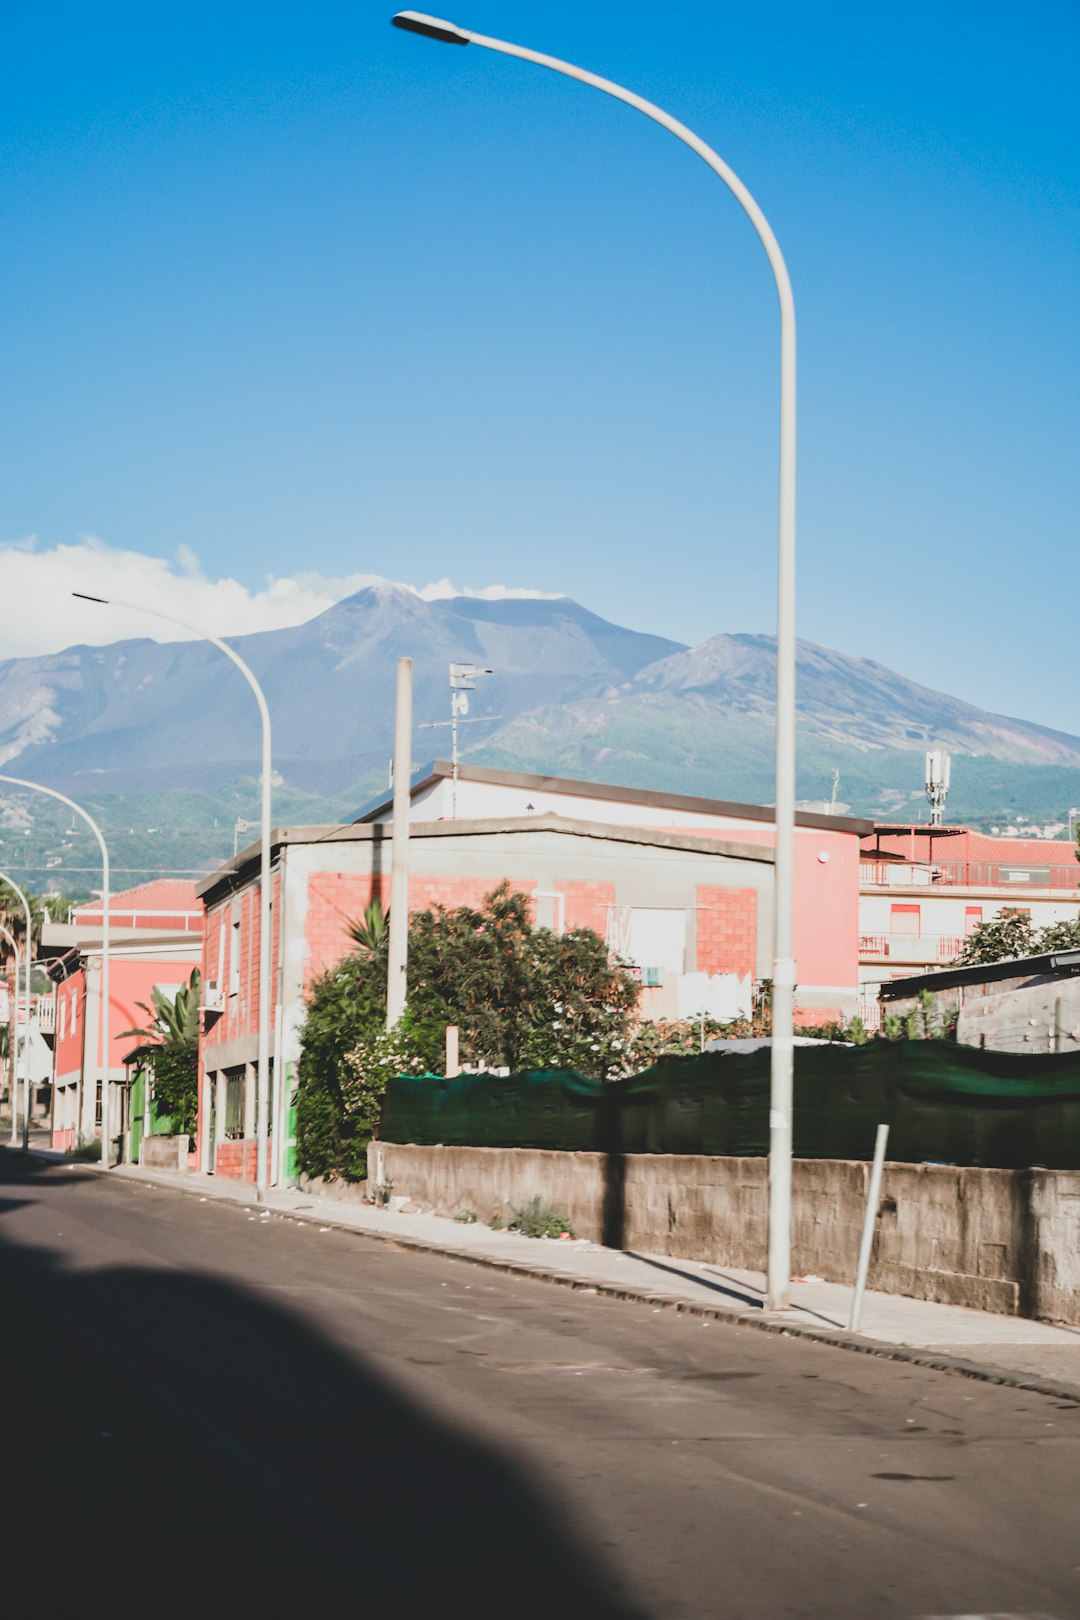 Town photo spot Mount Etna La Rossa